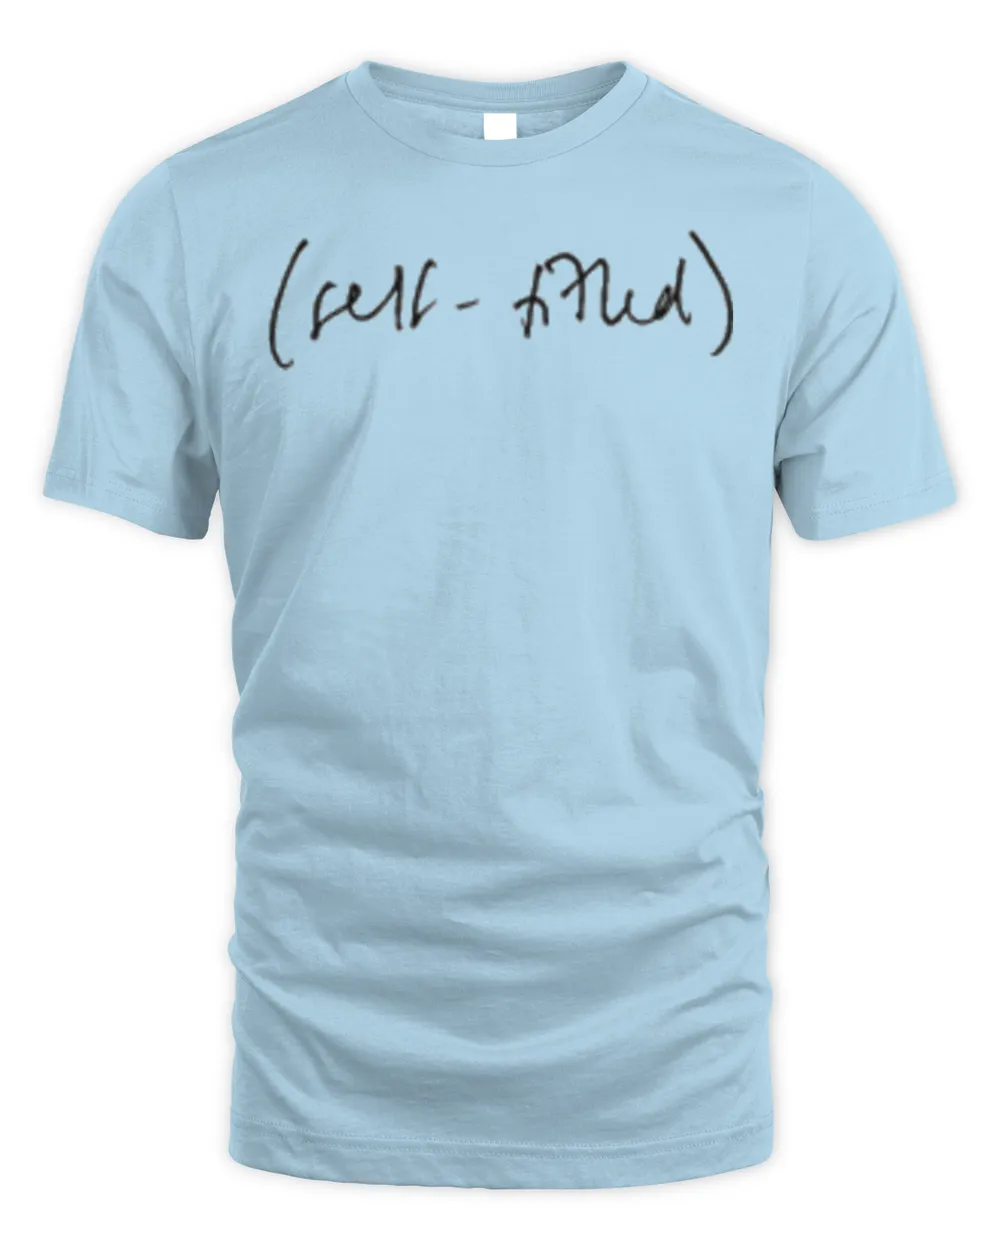 Self-Titled T-Shirt